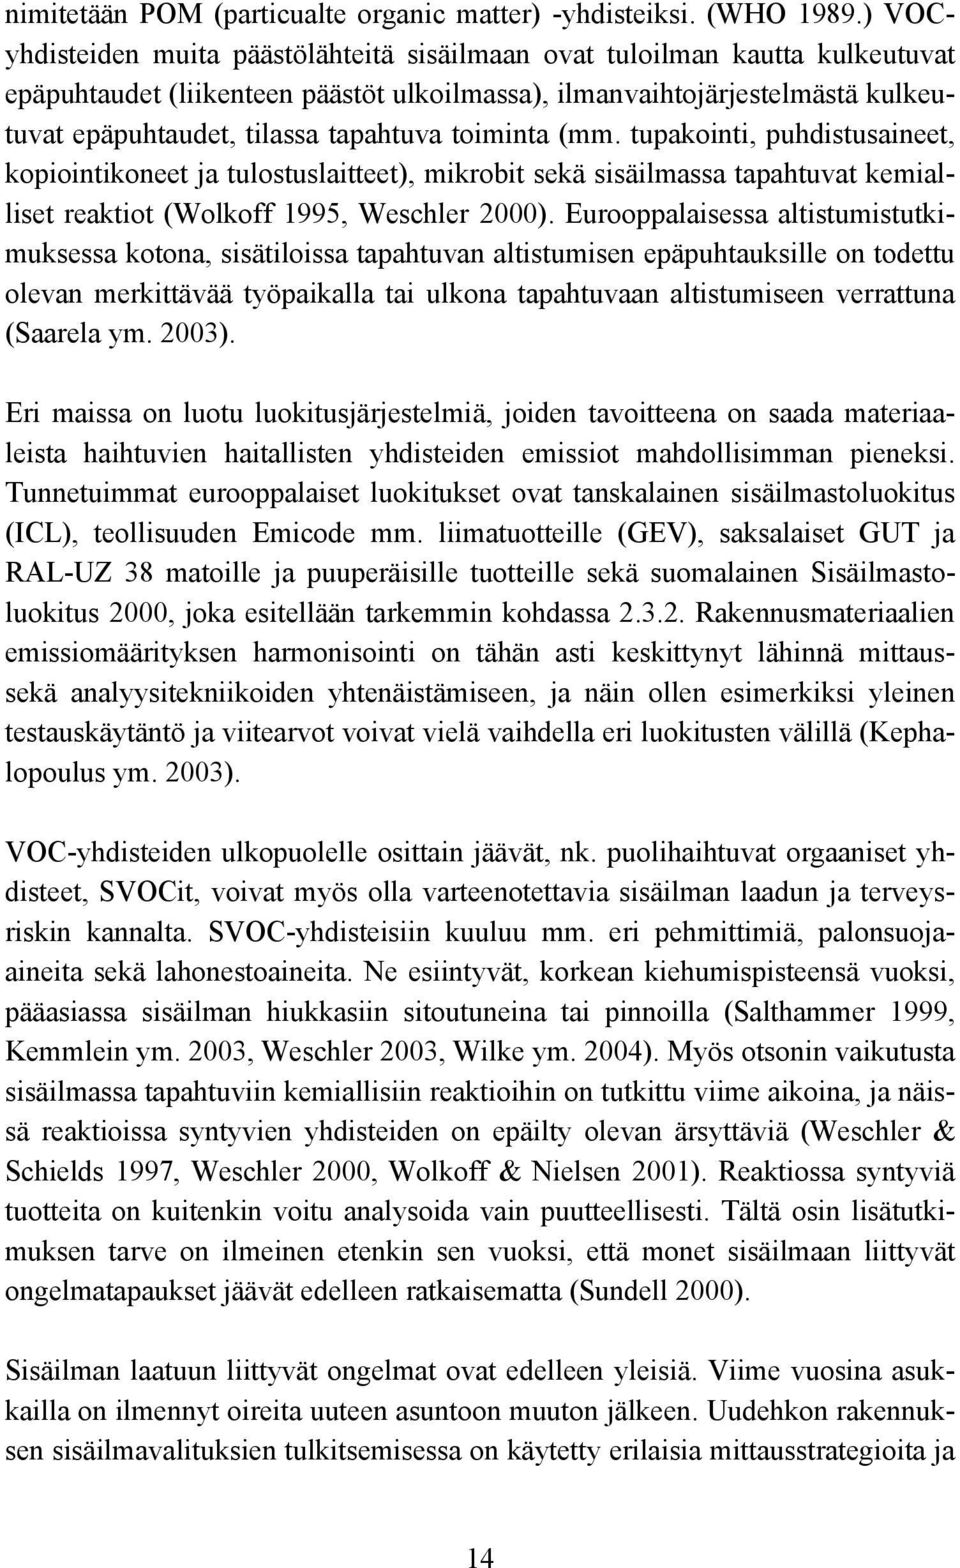 toiminta (mm. tupakointi, puhdistusaineet, kopiointikoneet ja tulostuslaitteet), mikrobit sekä sisäilmassa tapahtuvat kemialliset reaktiot (Wolkoff 1995, Weschler 2000).